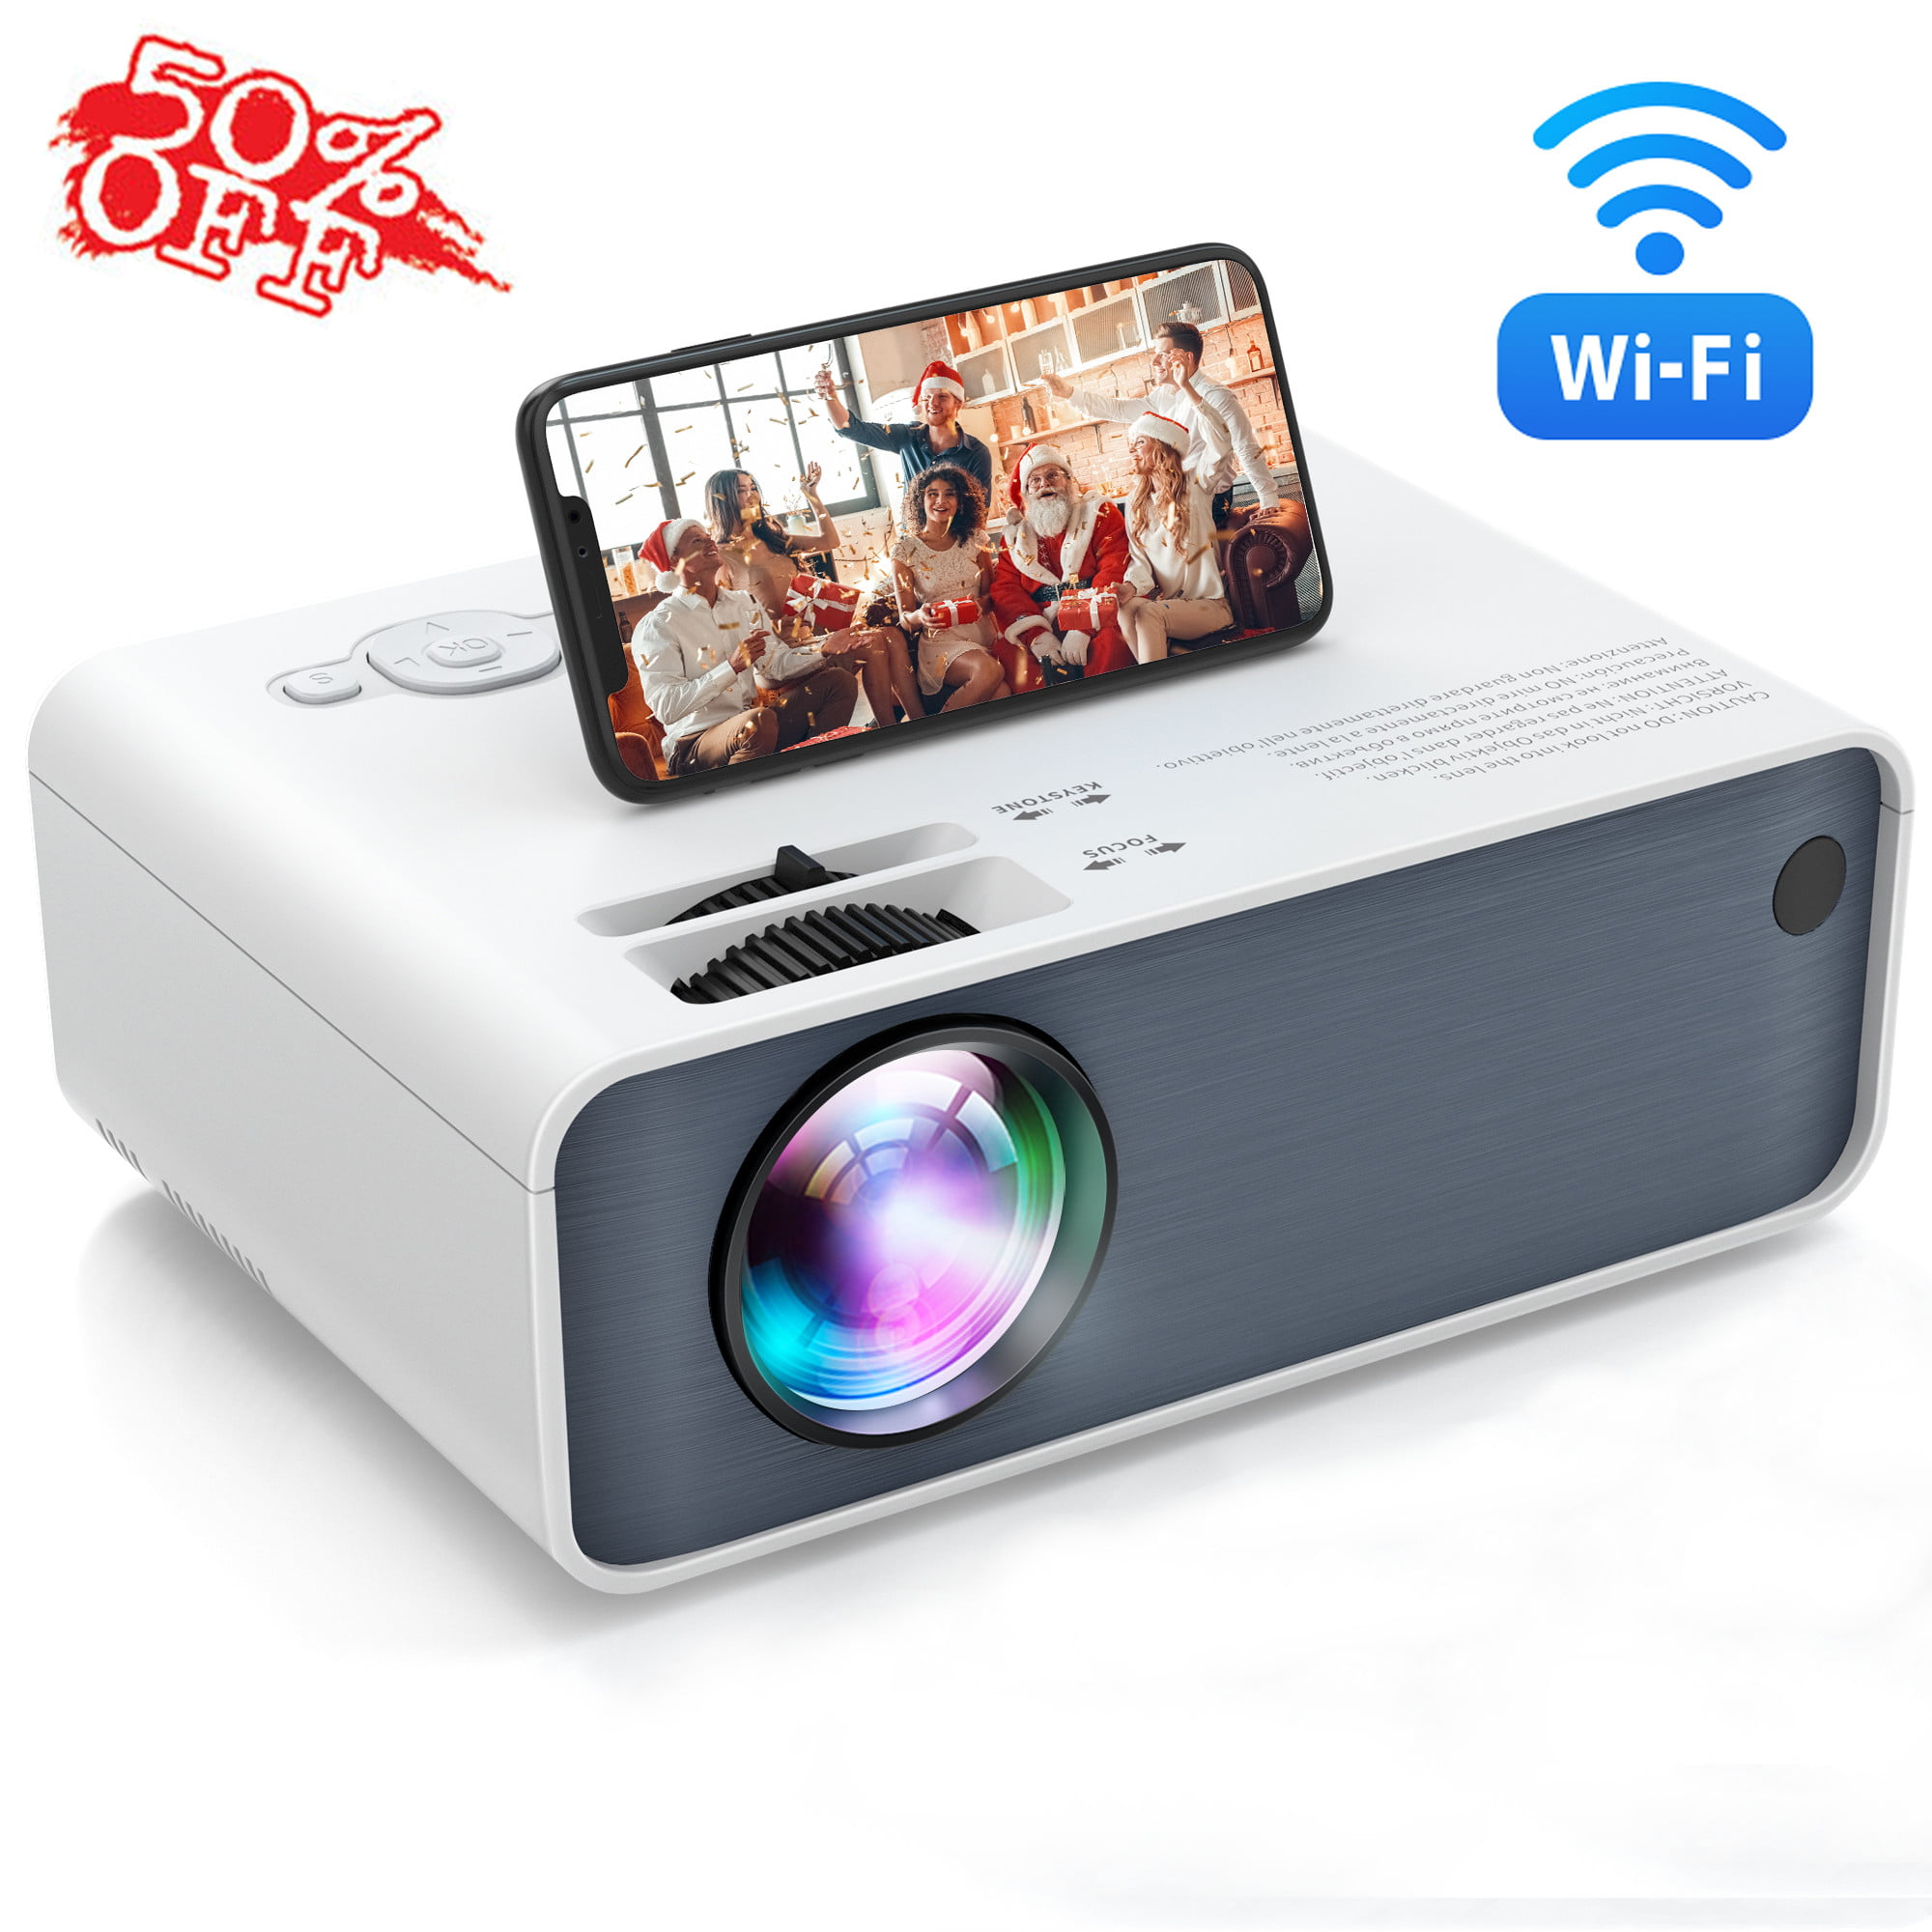 Biuzi Proyector Inteligente Segunda generación Mini DIY Home Proyector portátil Inteligente para teléfonos móviles Home Cinema Entertainment Device